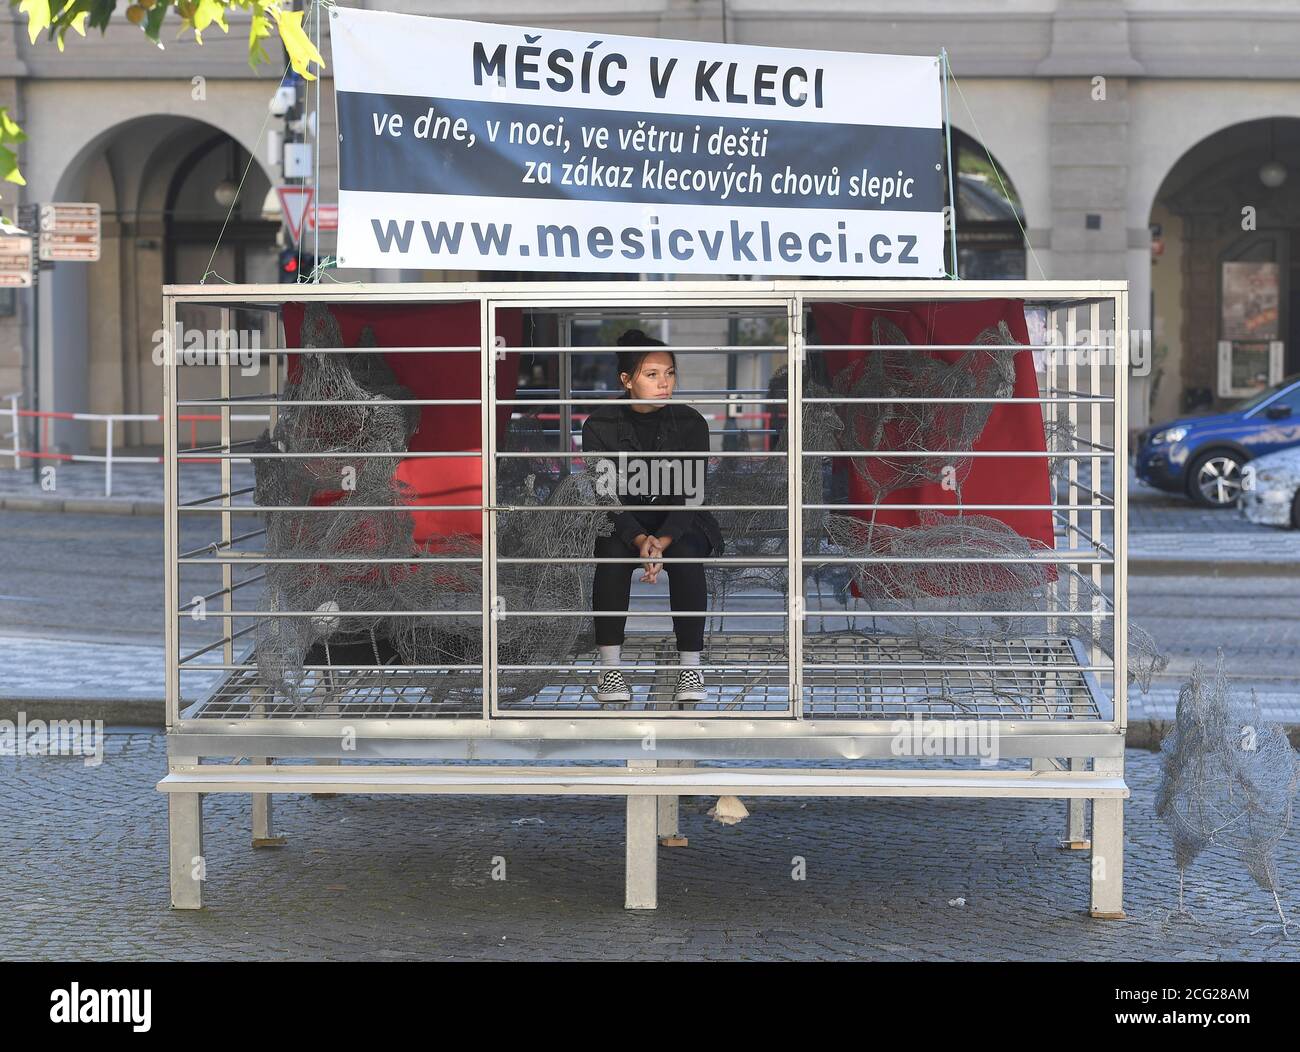 I protettori degli animali collocano la gabbia, che illustra le condizioni di vita e lo spazio delle galline e di altri animali e in cui i volontari, tra cui personaggi popolari, rimangono ciascuno per 12 ore, di fronte alla Camera dei deputati entro il mese nella campagna Cage, il 9 settembre 2020, a Praga, Repubblica Ceca. (CTK Photo/Ondrej Deml) Foto Stock